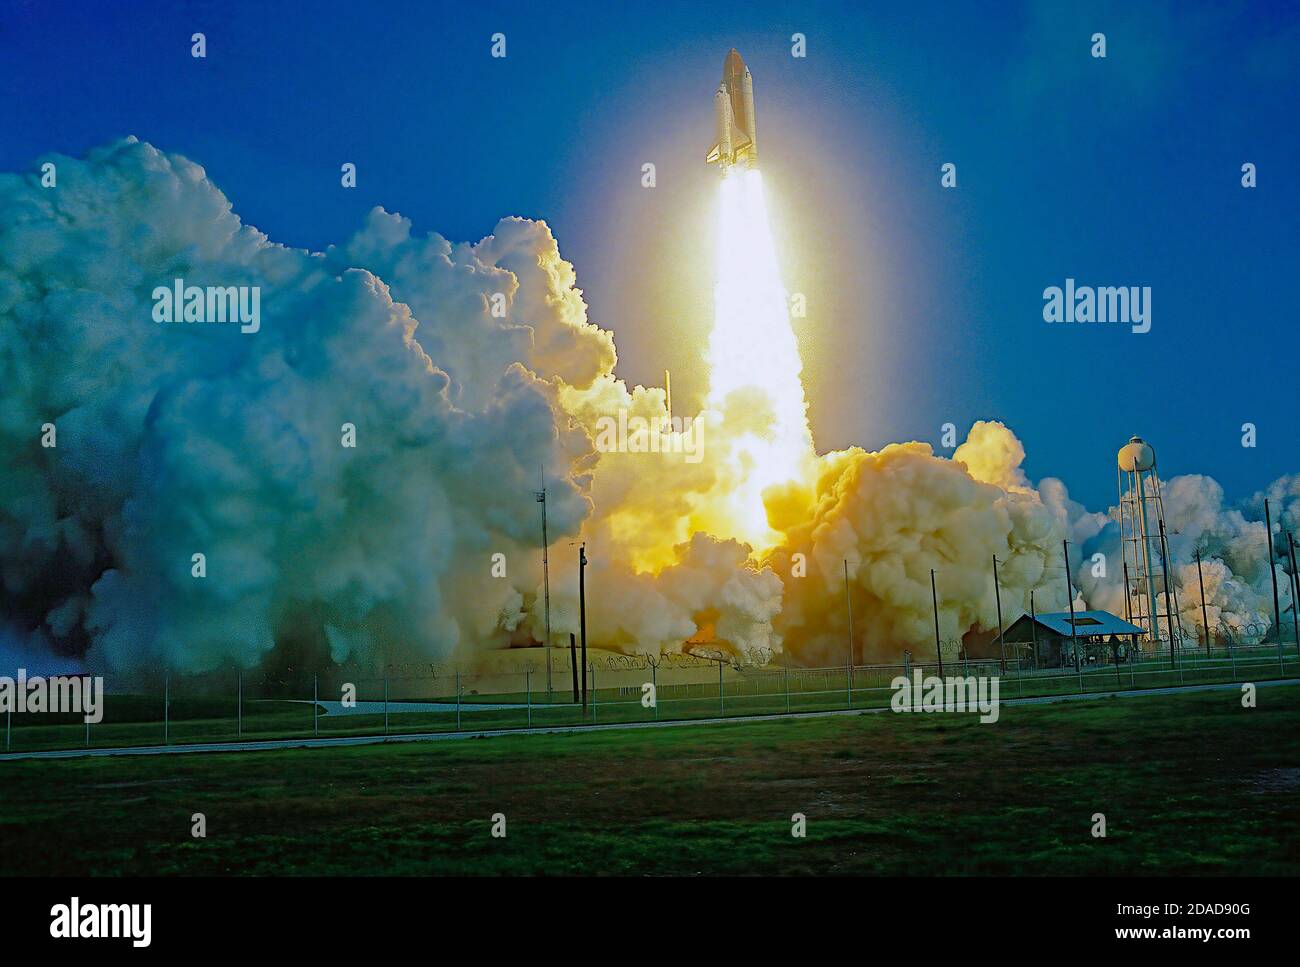 Merritt Island, Florida. USA, 28 aprile 1991 lo Space Shuttle 'Discovery' si solleva dalla rampa di lancio 39A su una colonna di fuoco lungo il tragitto verso l'obit della bassa Terra. Missione: Department of Defense, AFP-675; IBSS; SPAS-II Space Shuttle: Discovery Launch Pad: 39A lanciato: 28 aprile 1991, 7:33:14 AM EDT Credit: Mark Reinstein/MediaPunch Foto Stock